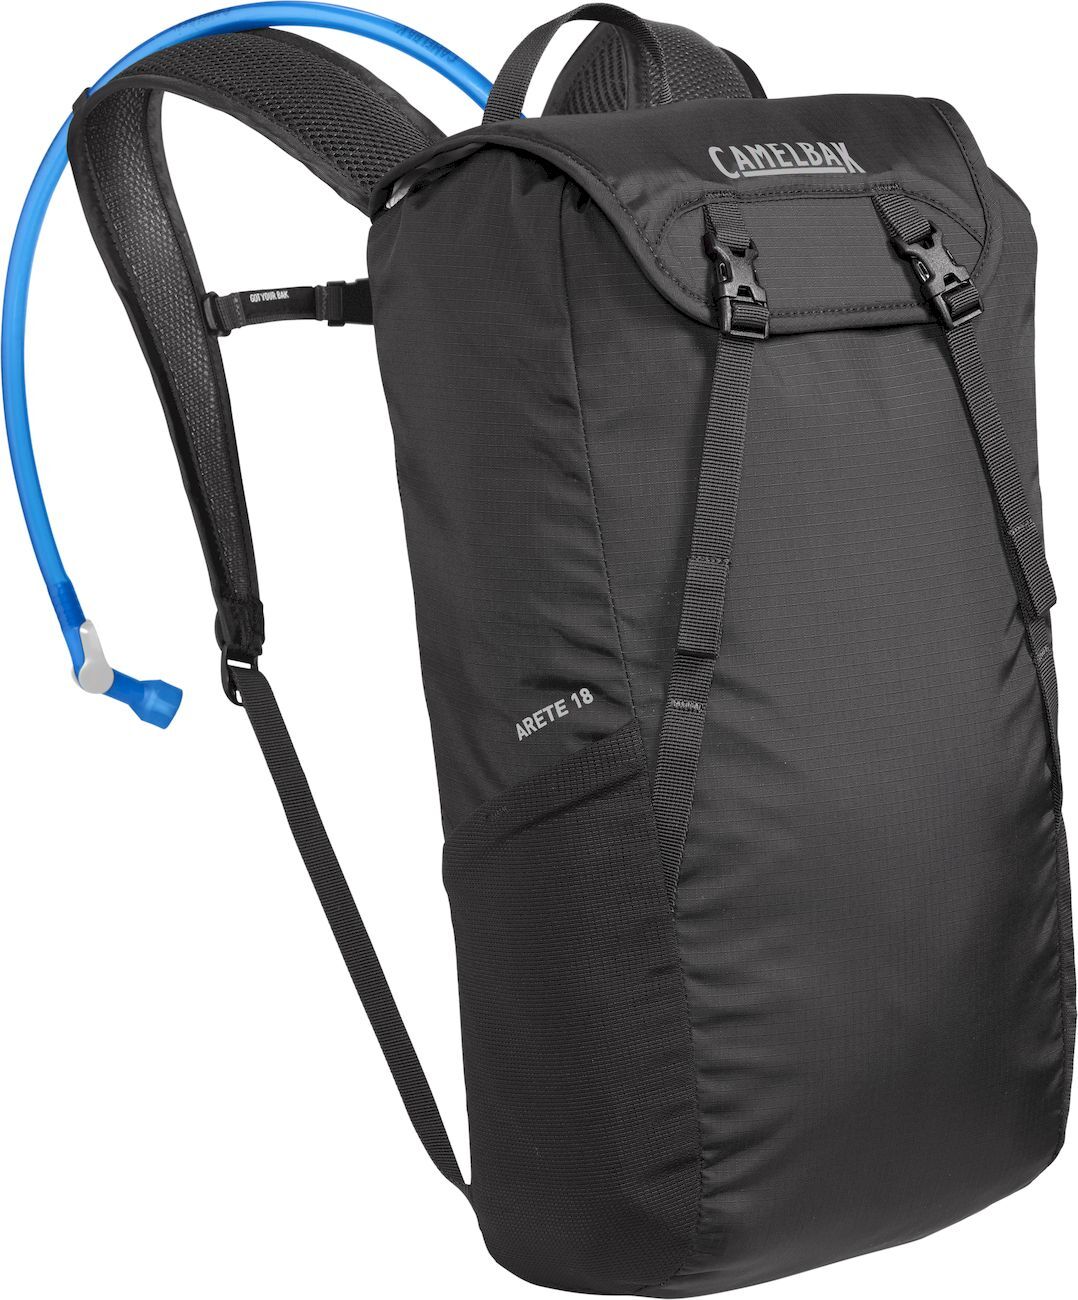 Camelbak Arete 18 +  2L - Walking backpack